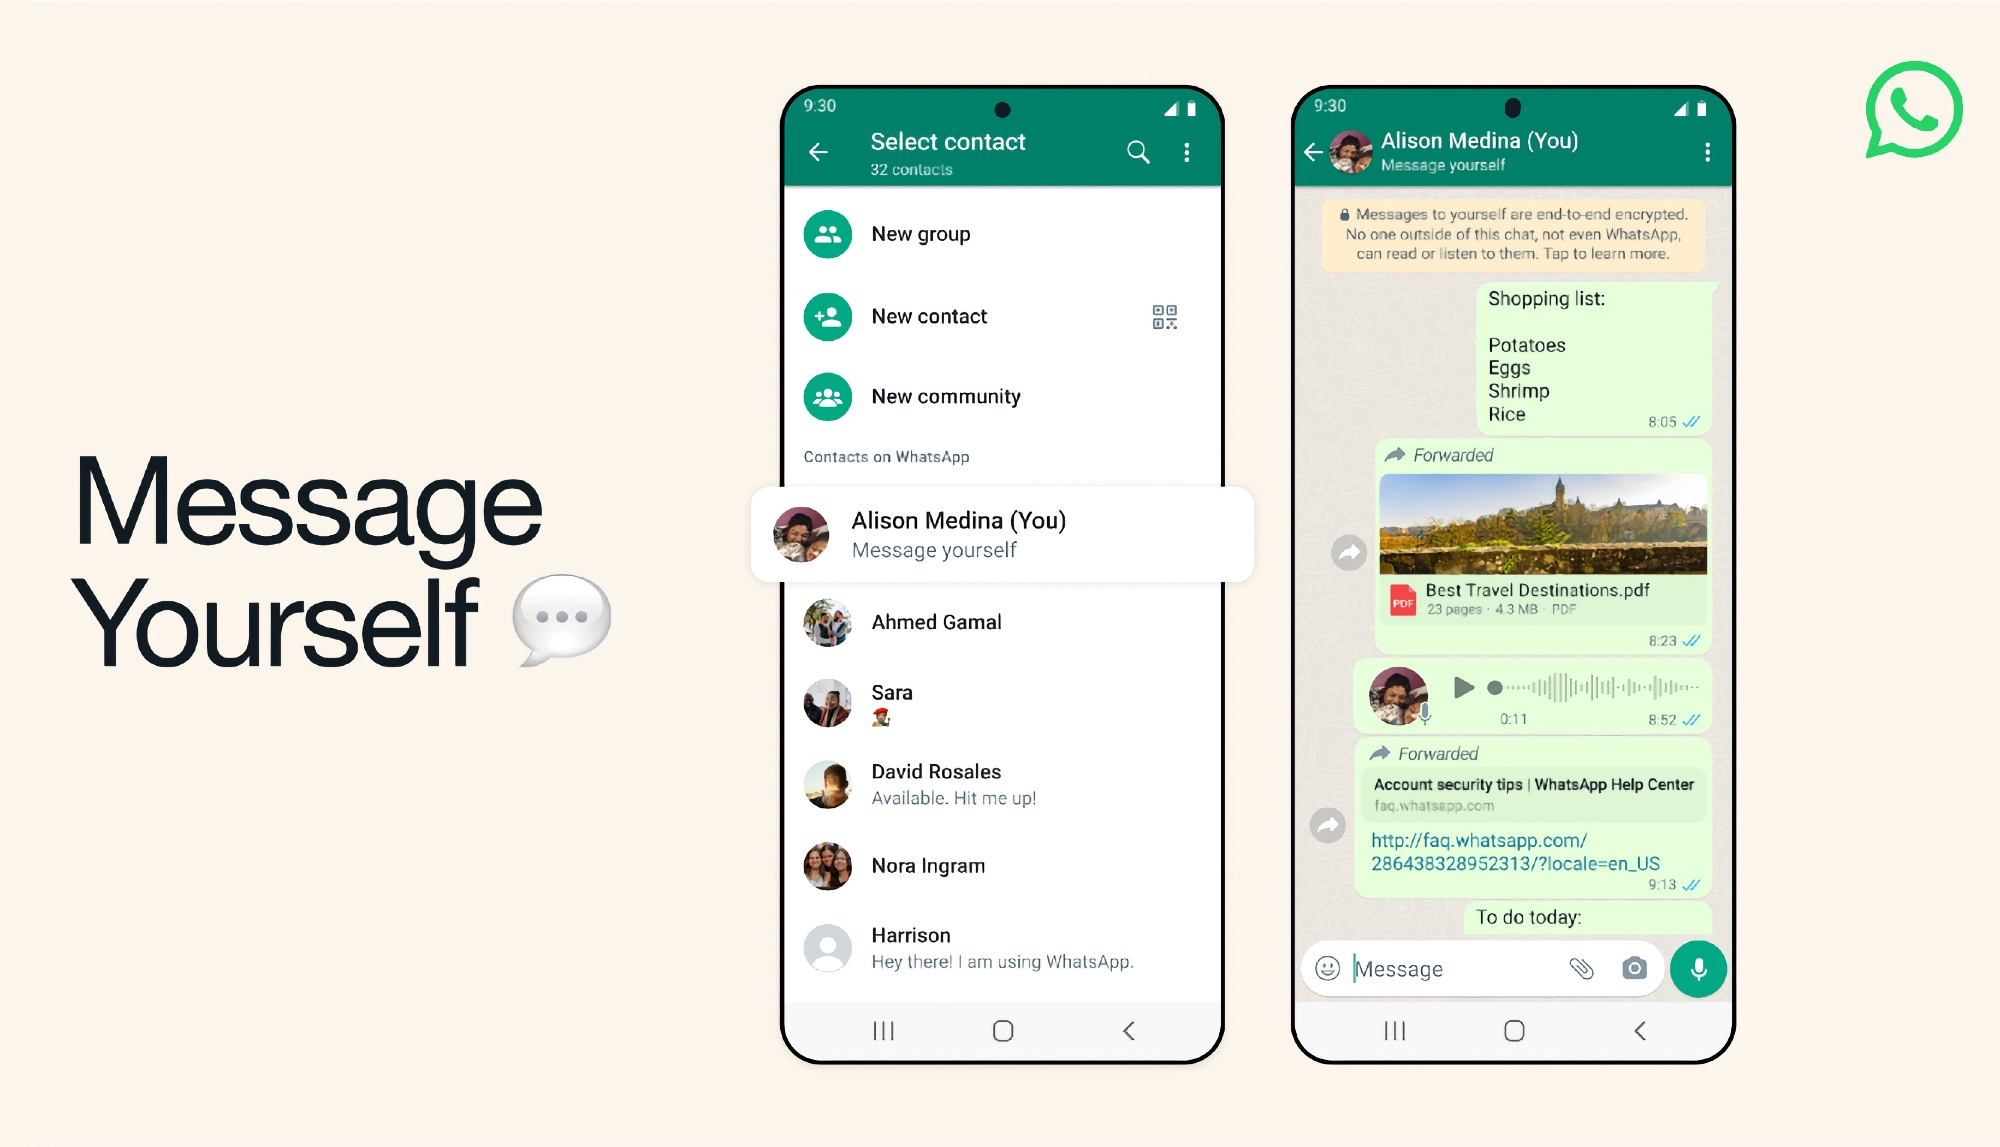 Come Telegram e Viber: WhatsApp ha Message Yourself, che consente di salvare link, note e file nell'app.